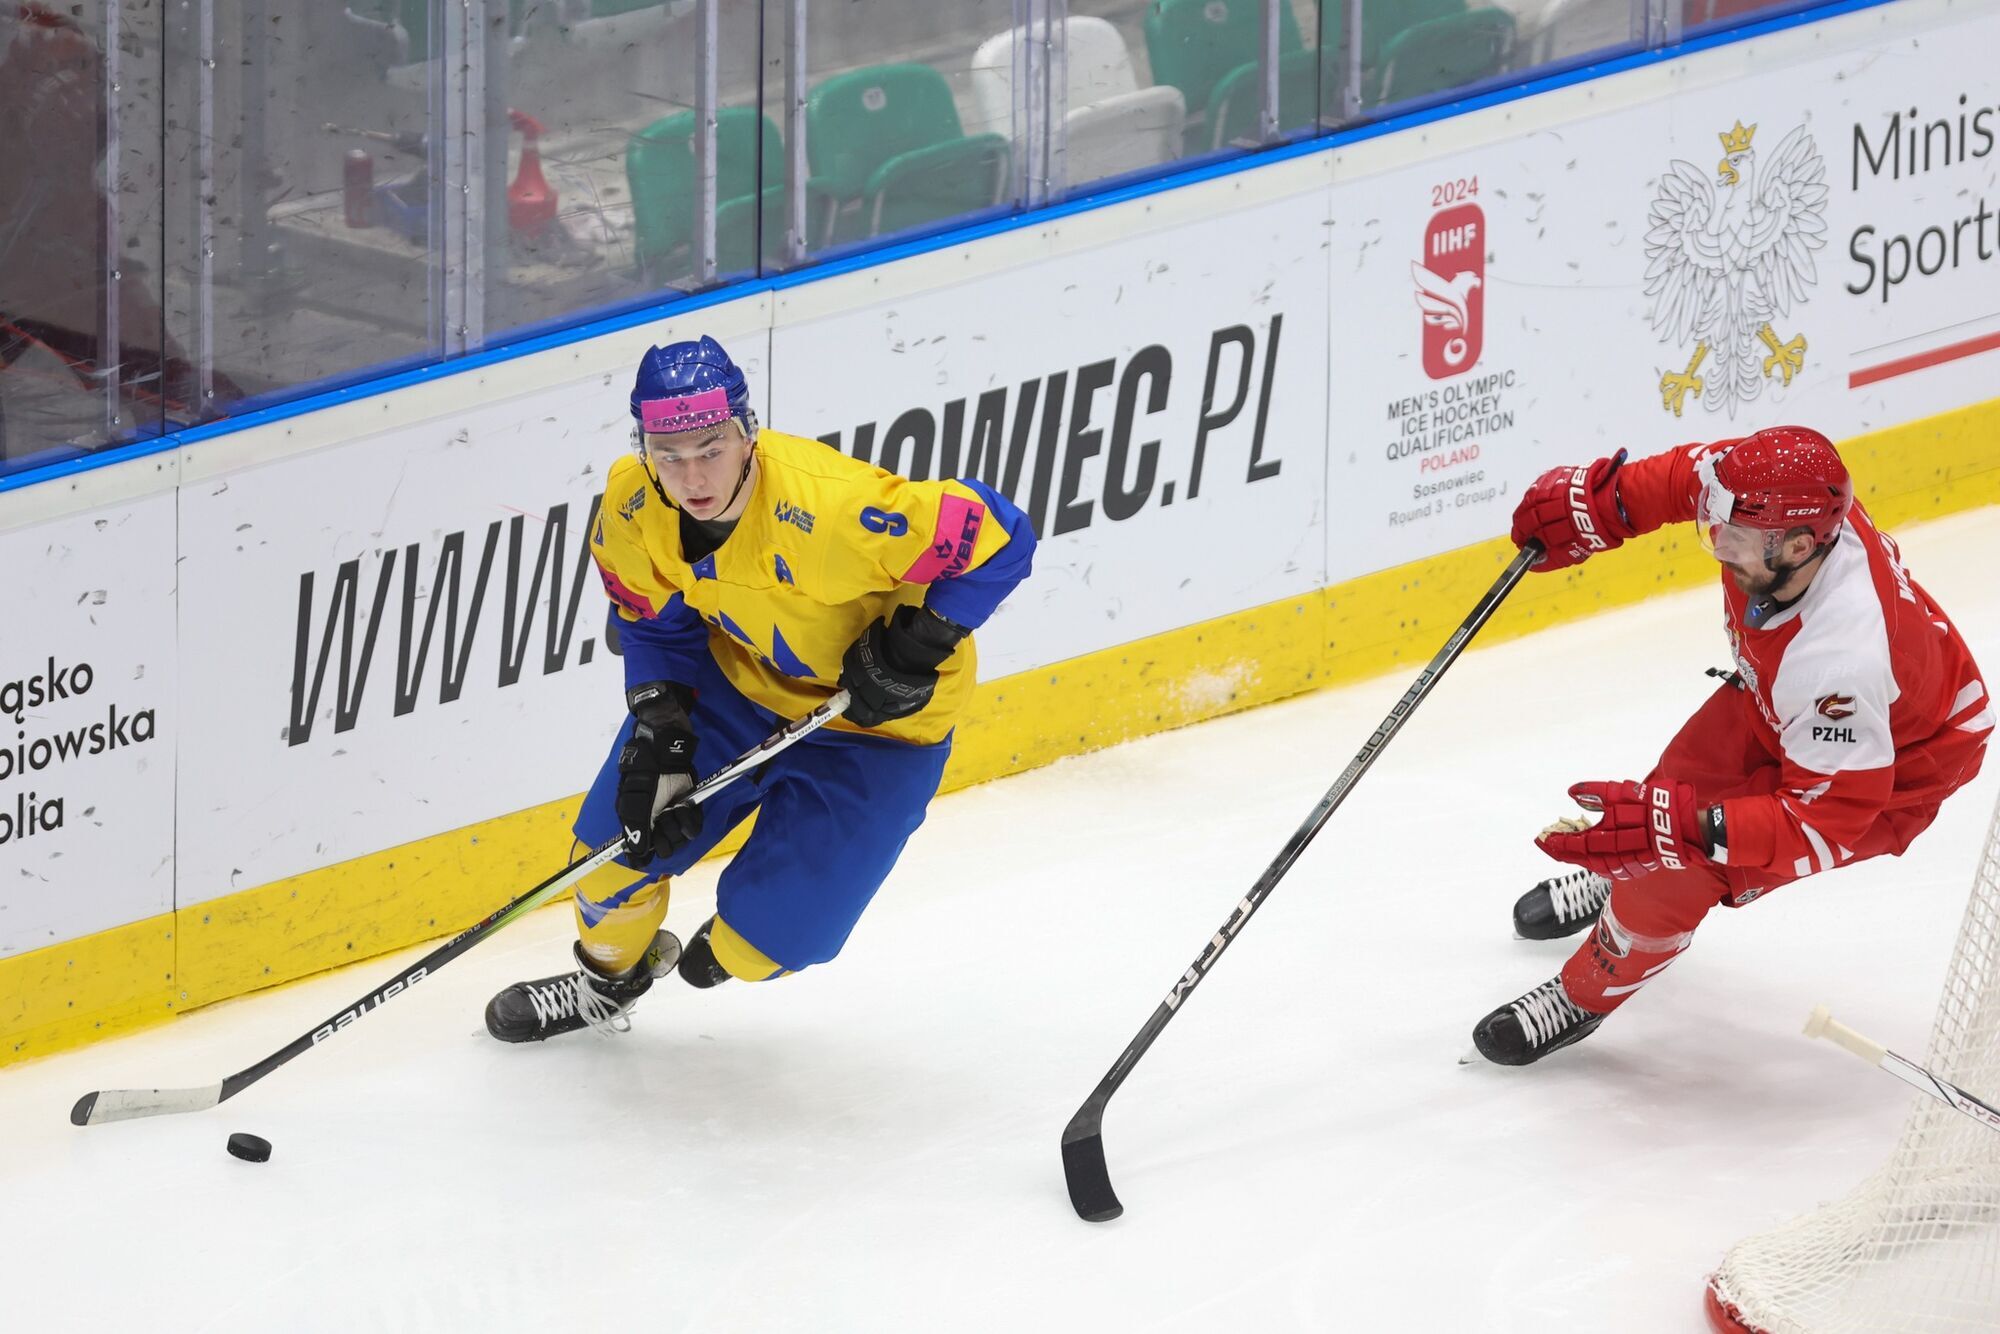 Грандиозная сенсация! Украина добыла драматичную победу в Польше в квалификации Олимпиады-2026 по хоккею. Видео